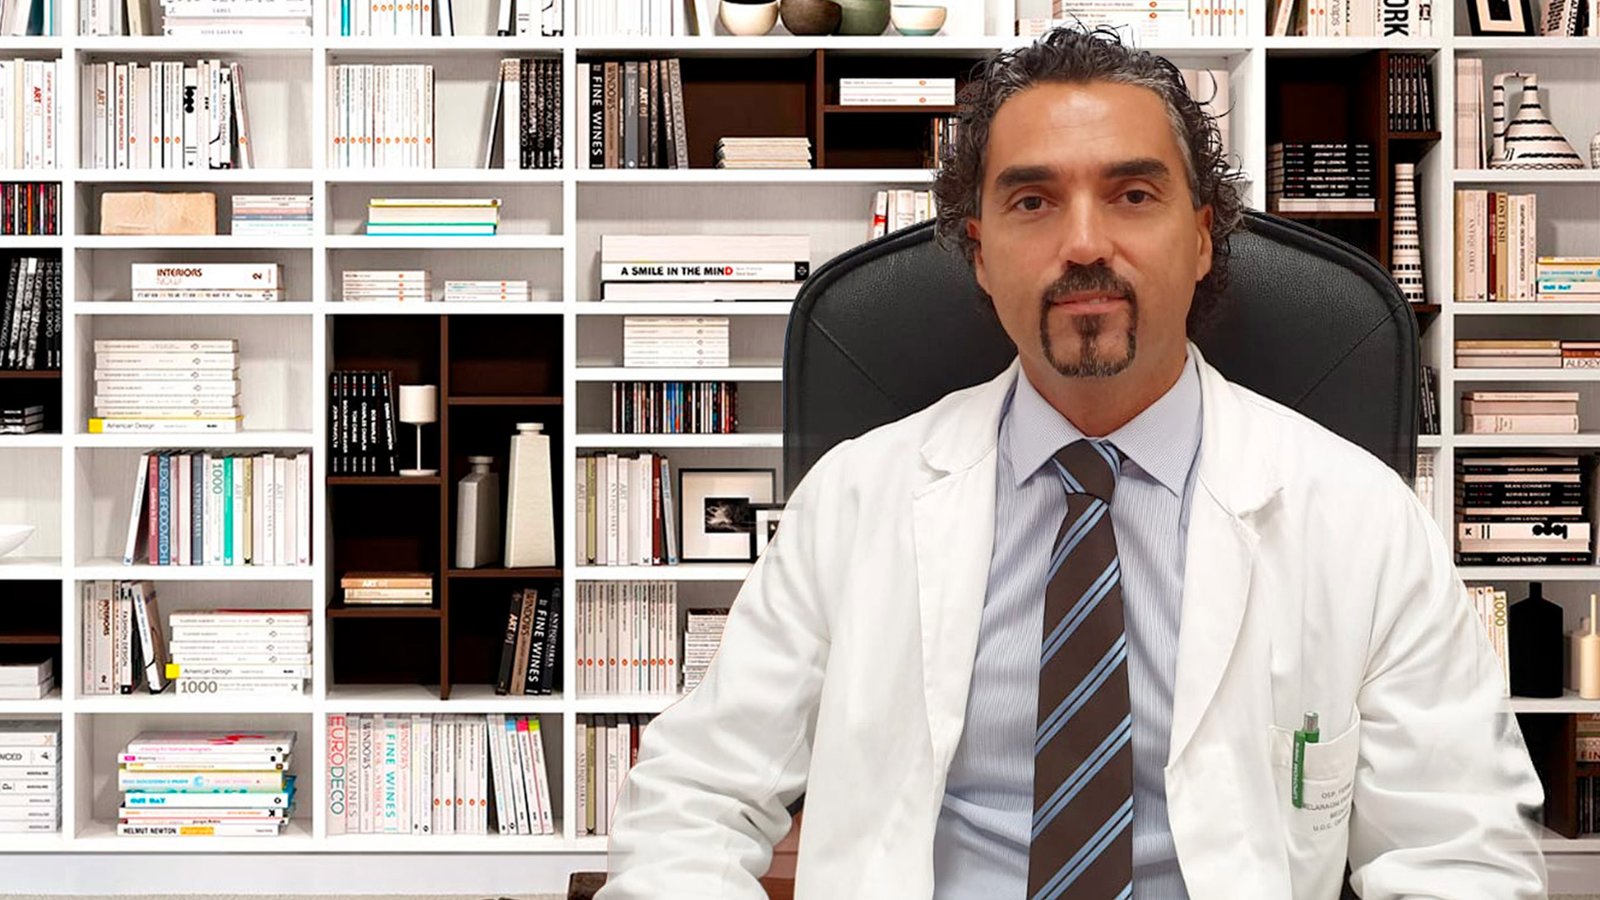 Dr. Francesco Melaragni Ortopedico Viterbo